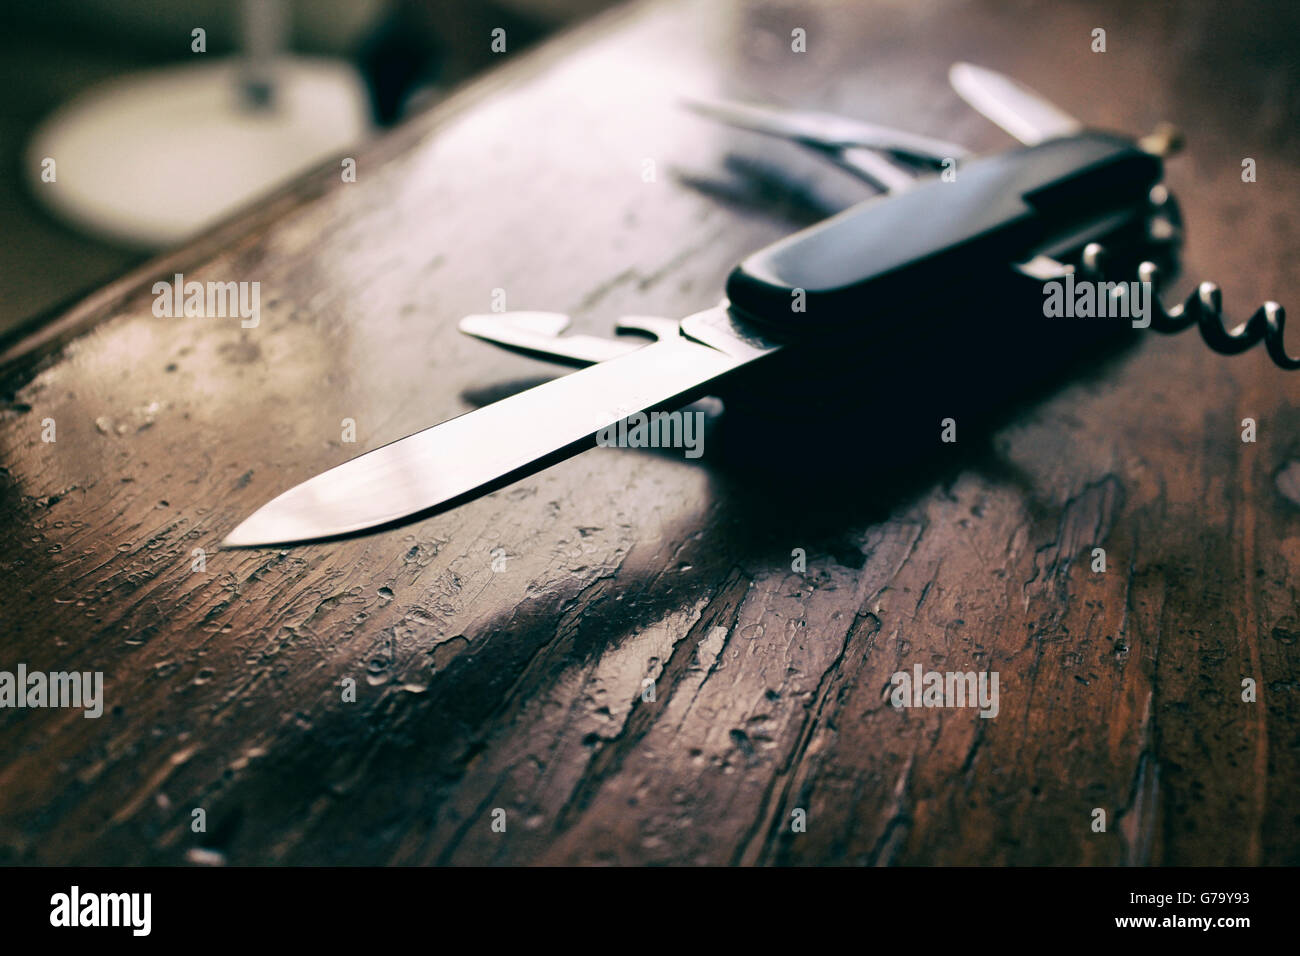 Fotografía de un cuchillo de estilo suizo. Foto de stock